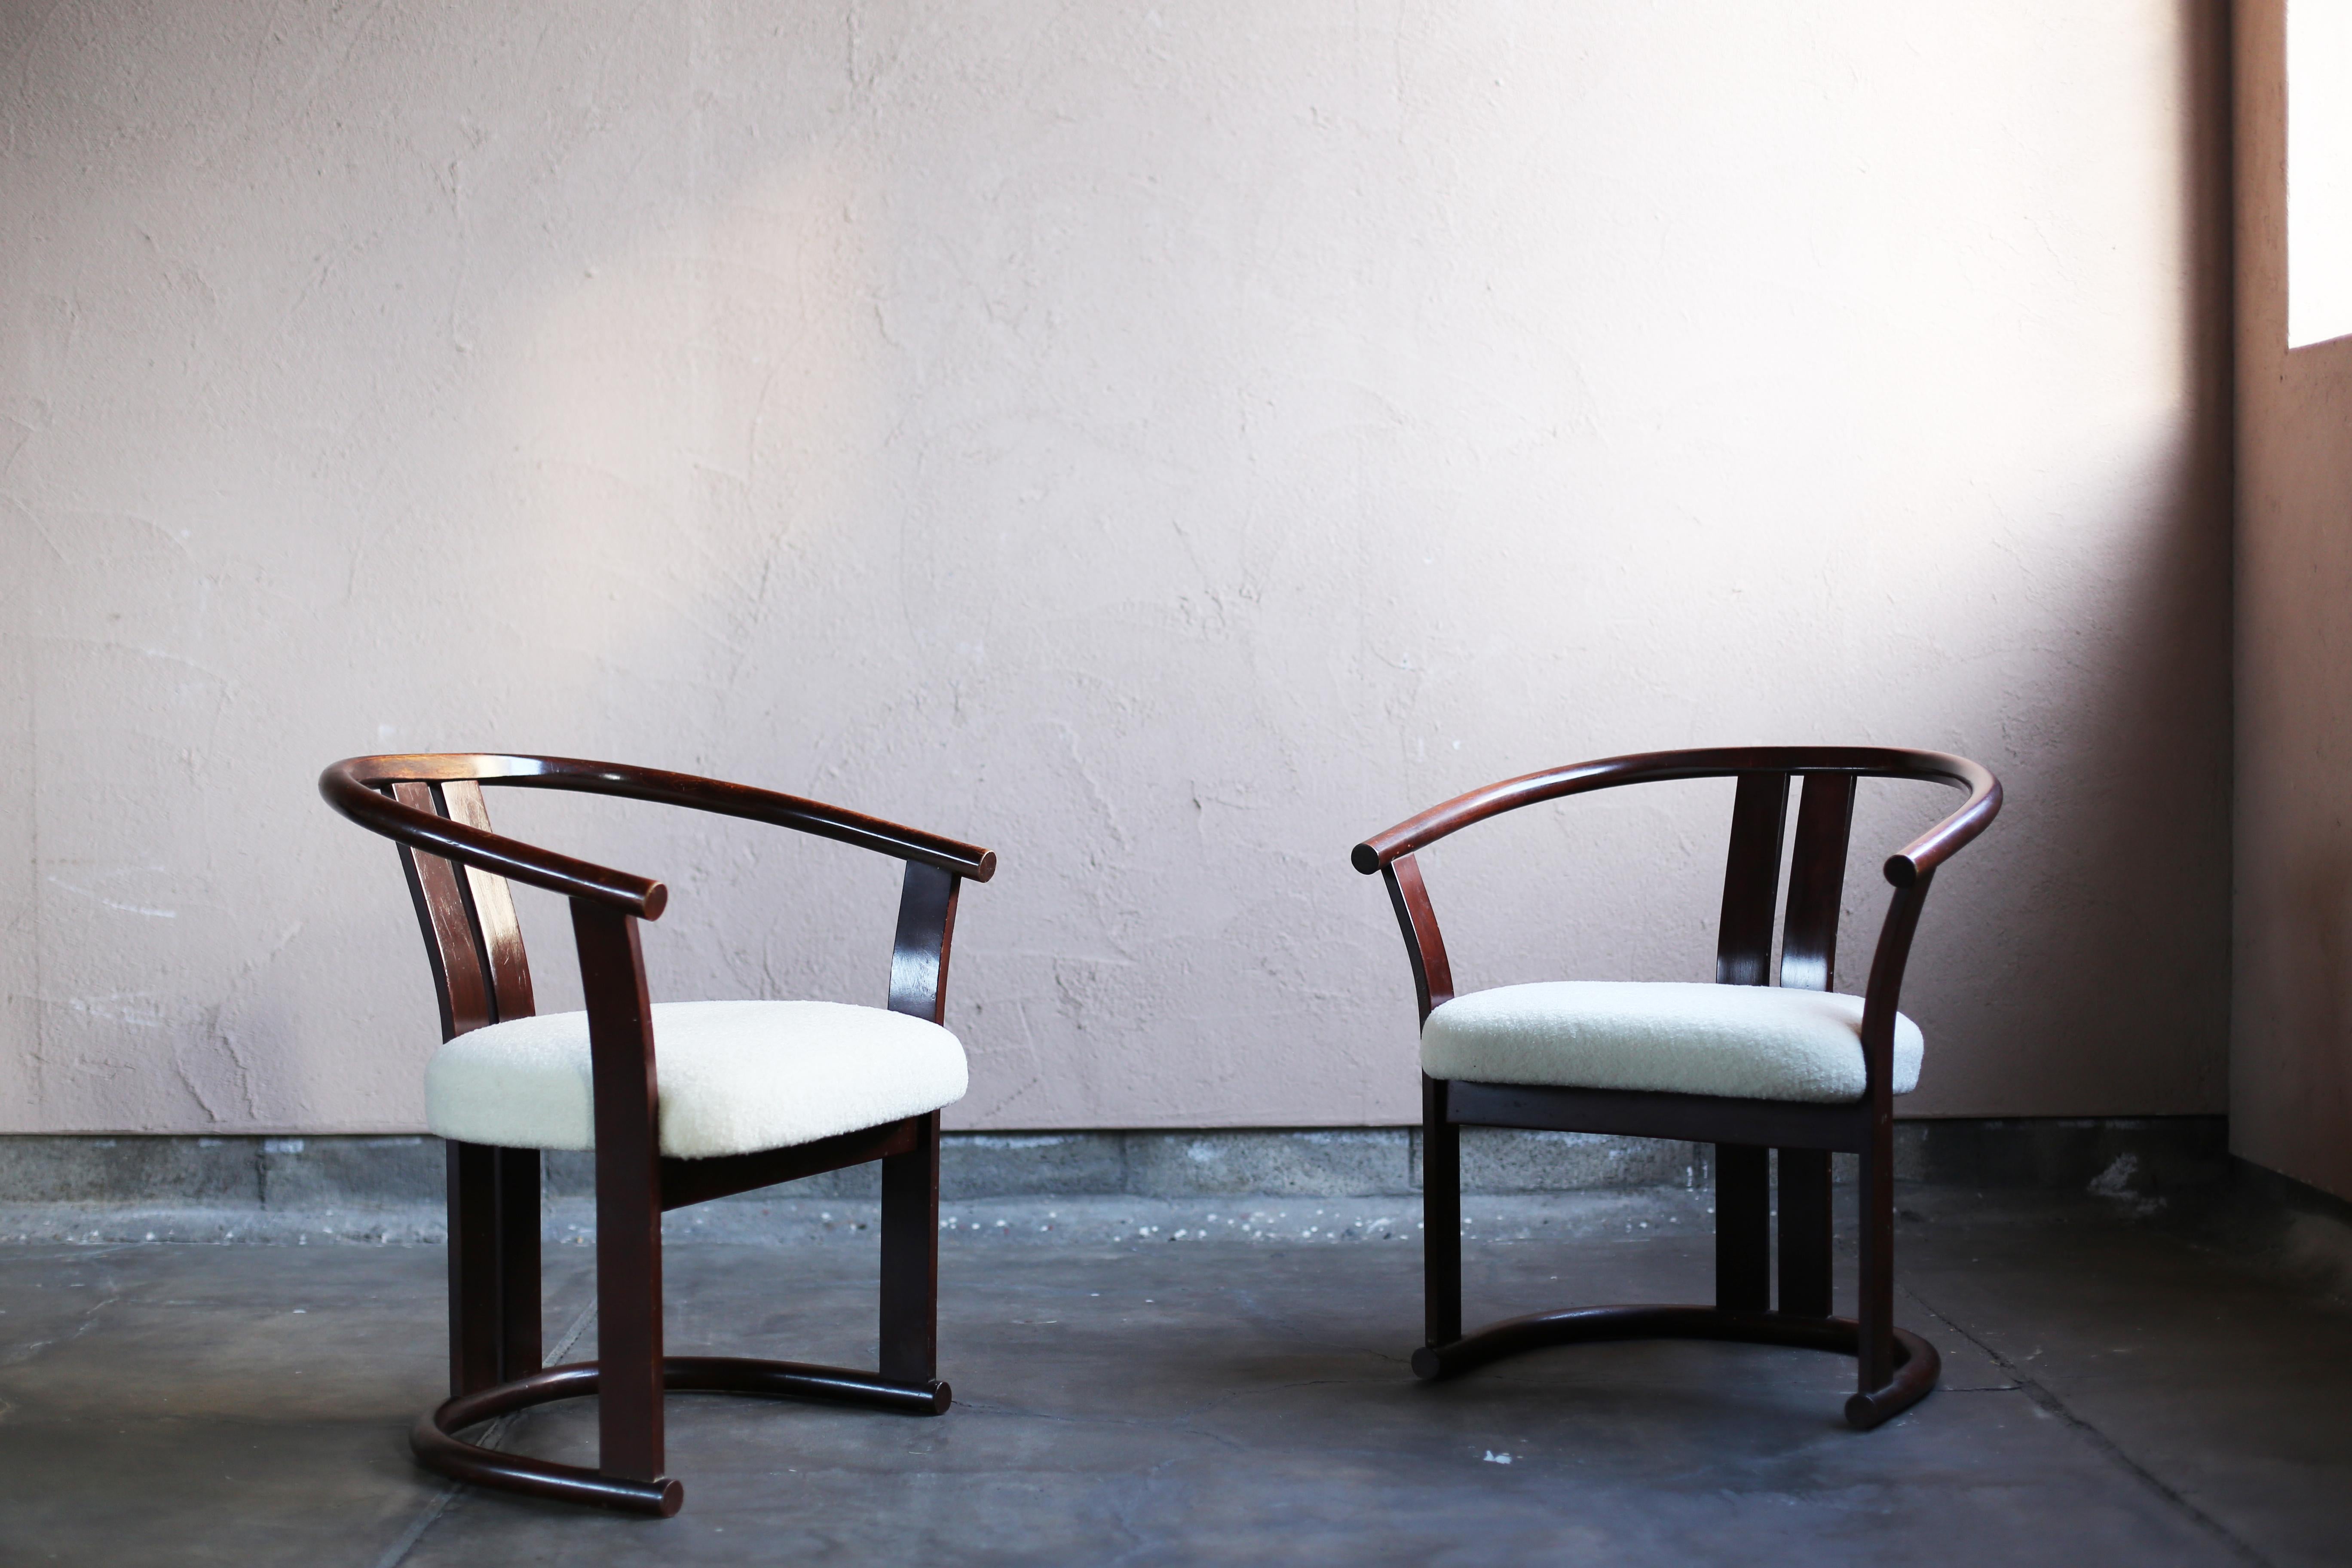 Il s'agit de chaises des années 60-70 conçues par Isamu Kenmochi pour Akita Mokkou. Les autocollants originaux existent toujours.
Tous les cadres sont fabriqués en bois de hêtre massif cintré.
Akita Mokkou est depuis plus de 100 ans le seul